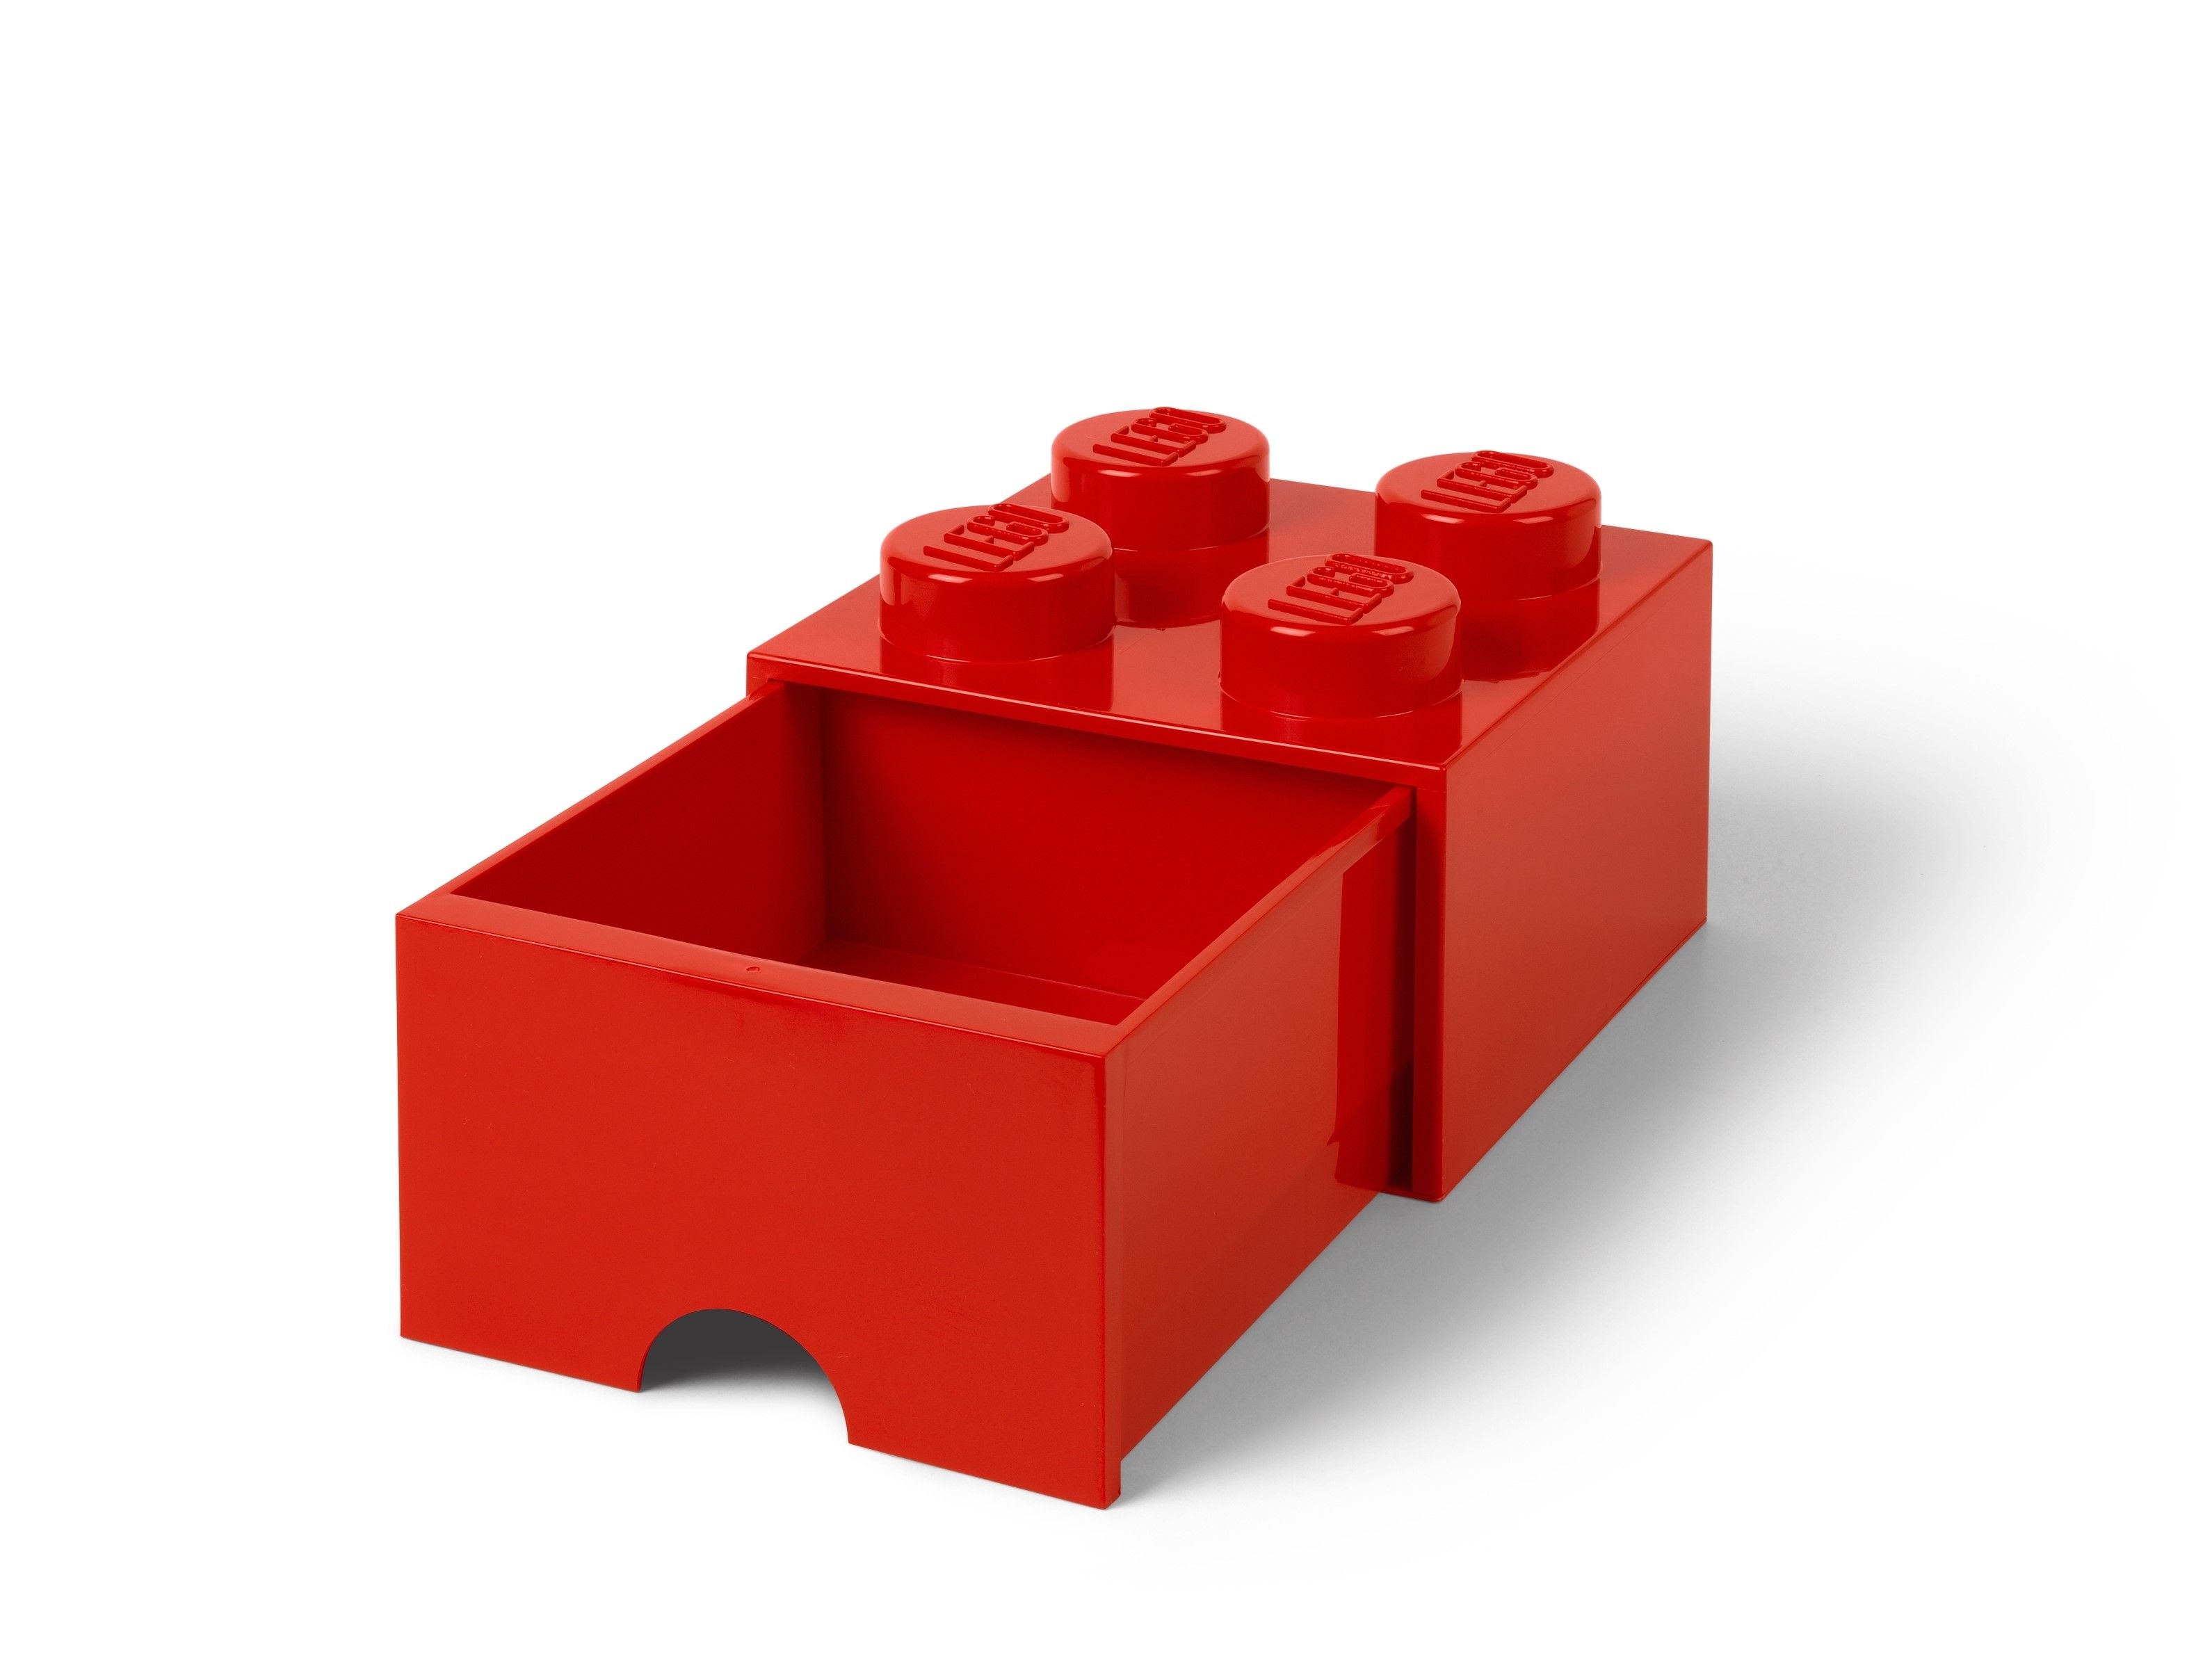 LEGO Gear 5006140 AUFBEWAHRUNGSSTEIN MIT SCHUBFACH UND 4 NOPPEN IN ROT LEGO_5005402_alt2.jpg